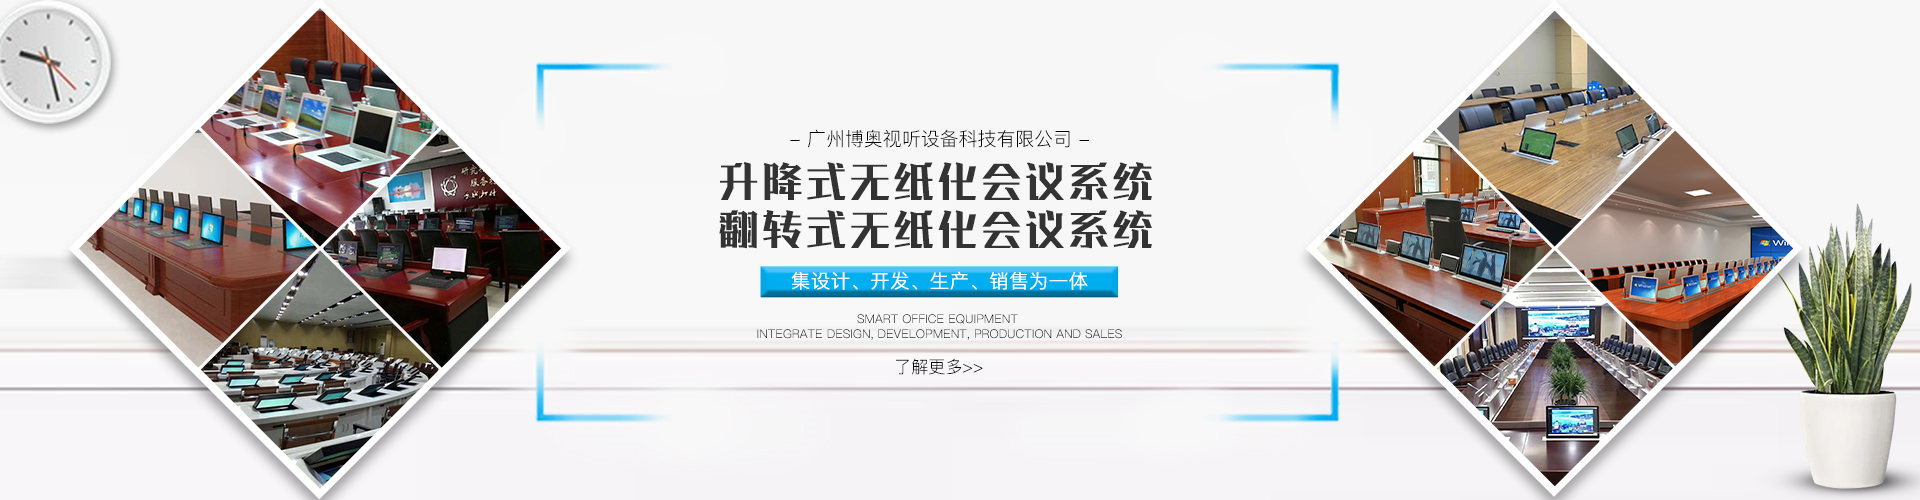 广州博奥视听设备科技有限公司